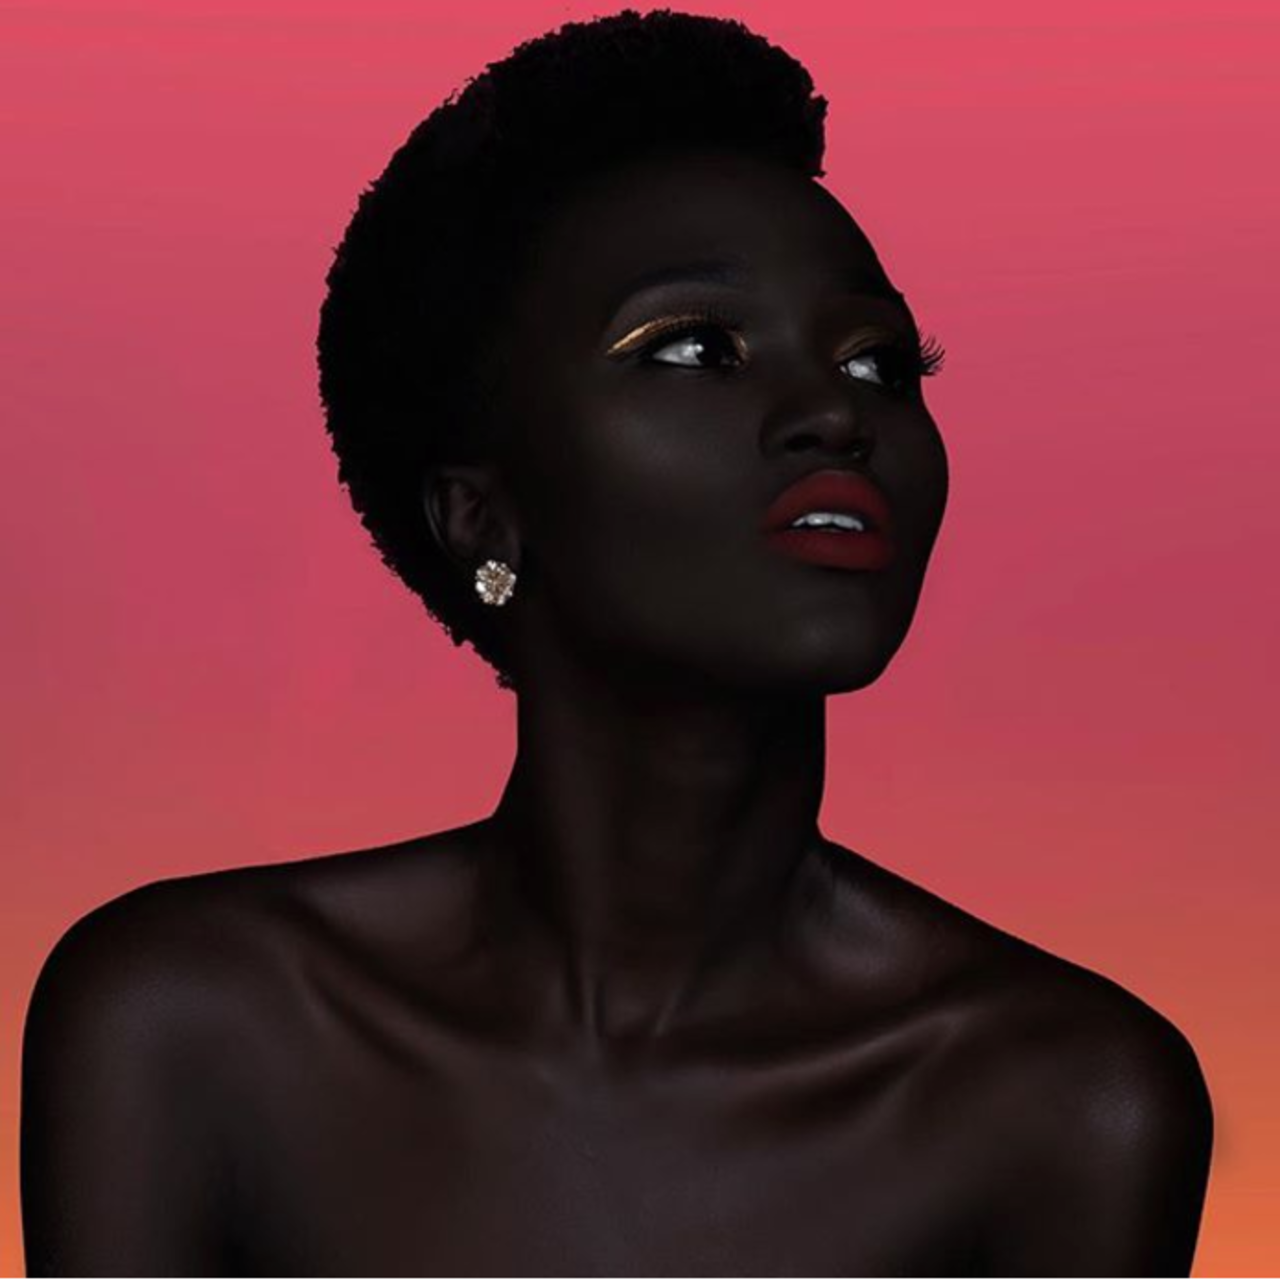 Темнокожие огромные. Няким Гатвеч. Королева тьмы - Ньяким Гатвех - модель из Южного Судана. Няким Гатвех - "Королева тьмы" из Южного Судана. Ньяким Гатвеч модель.